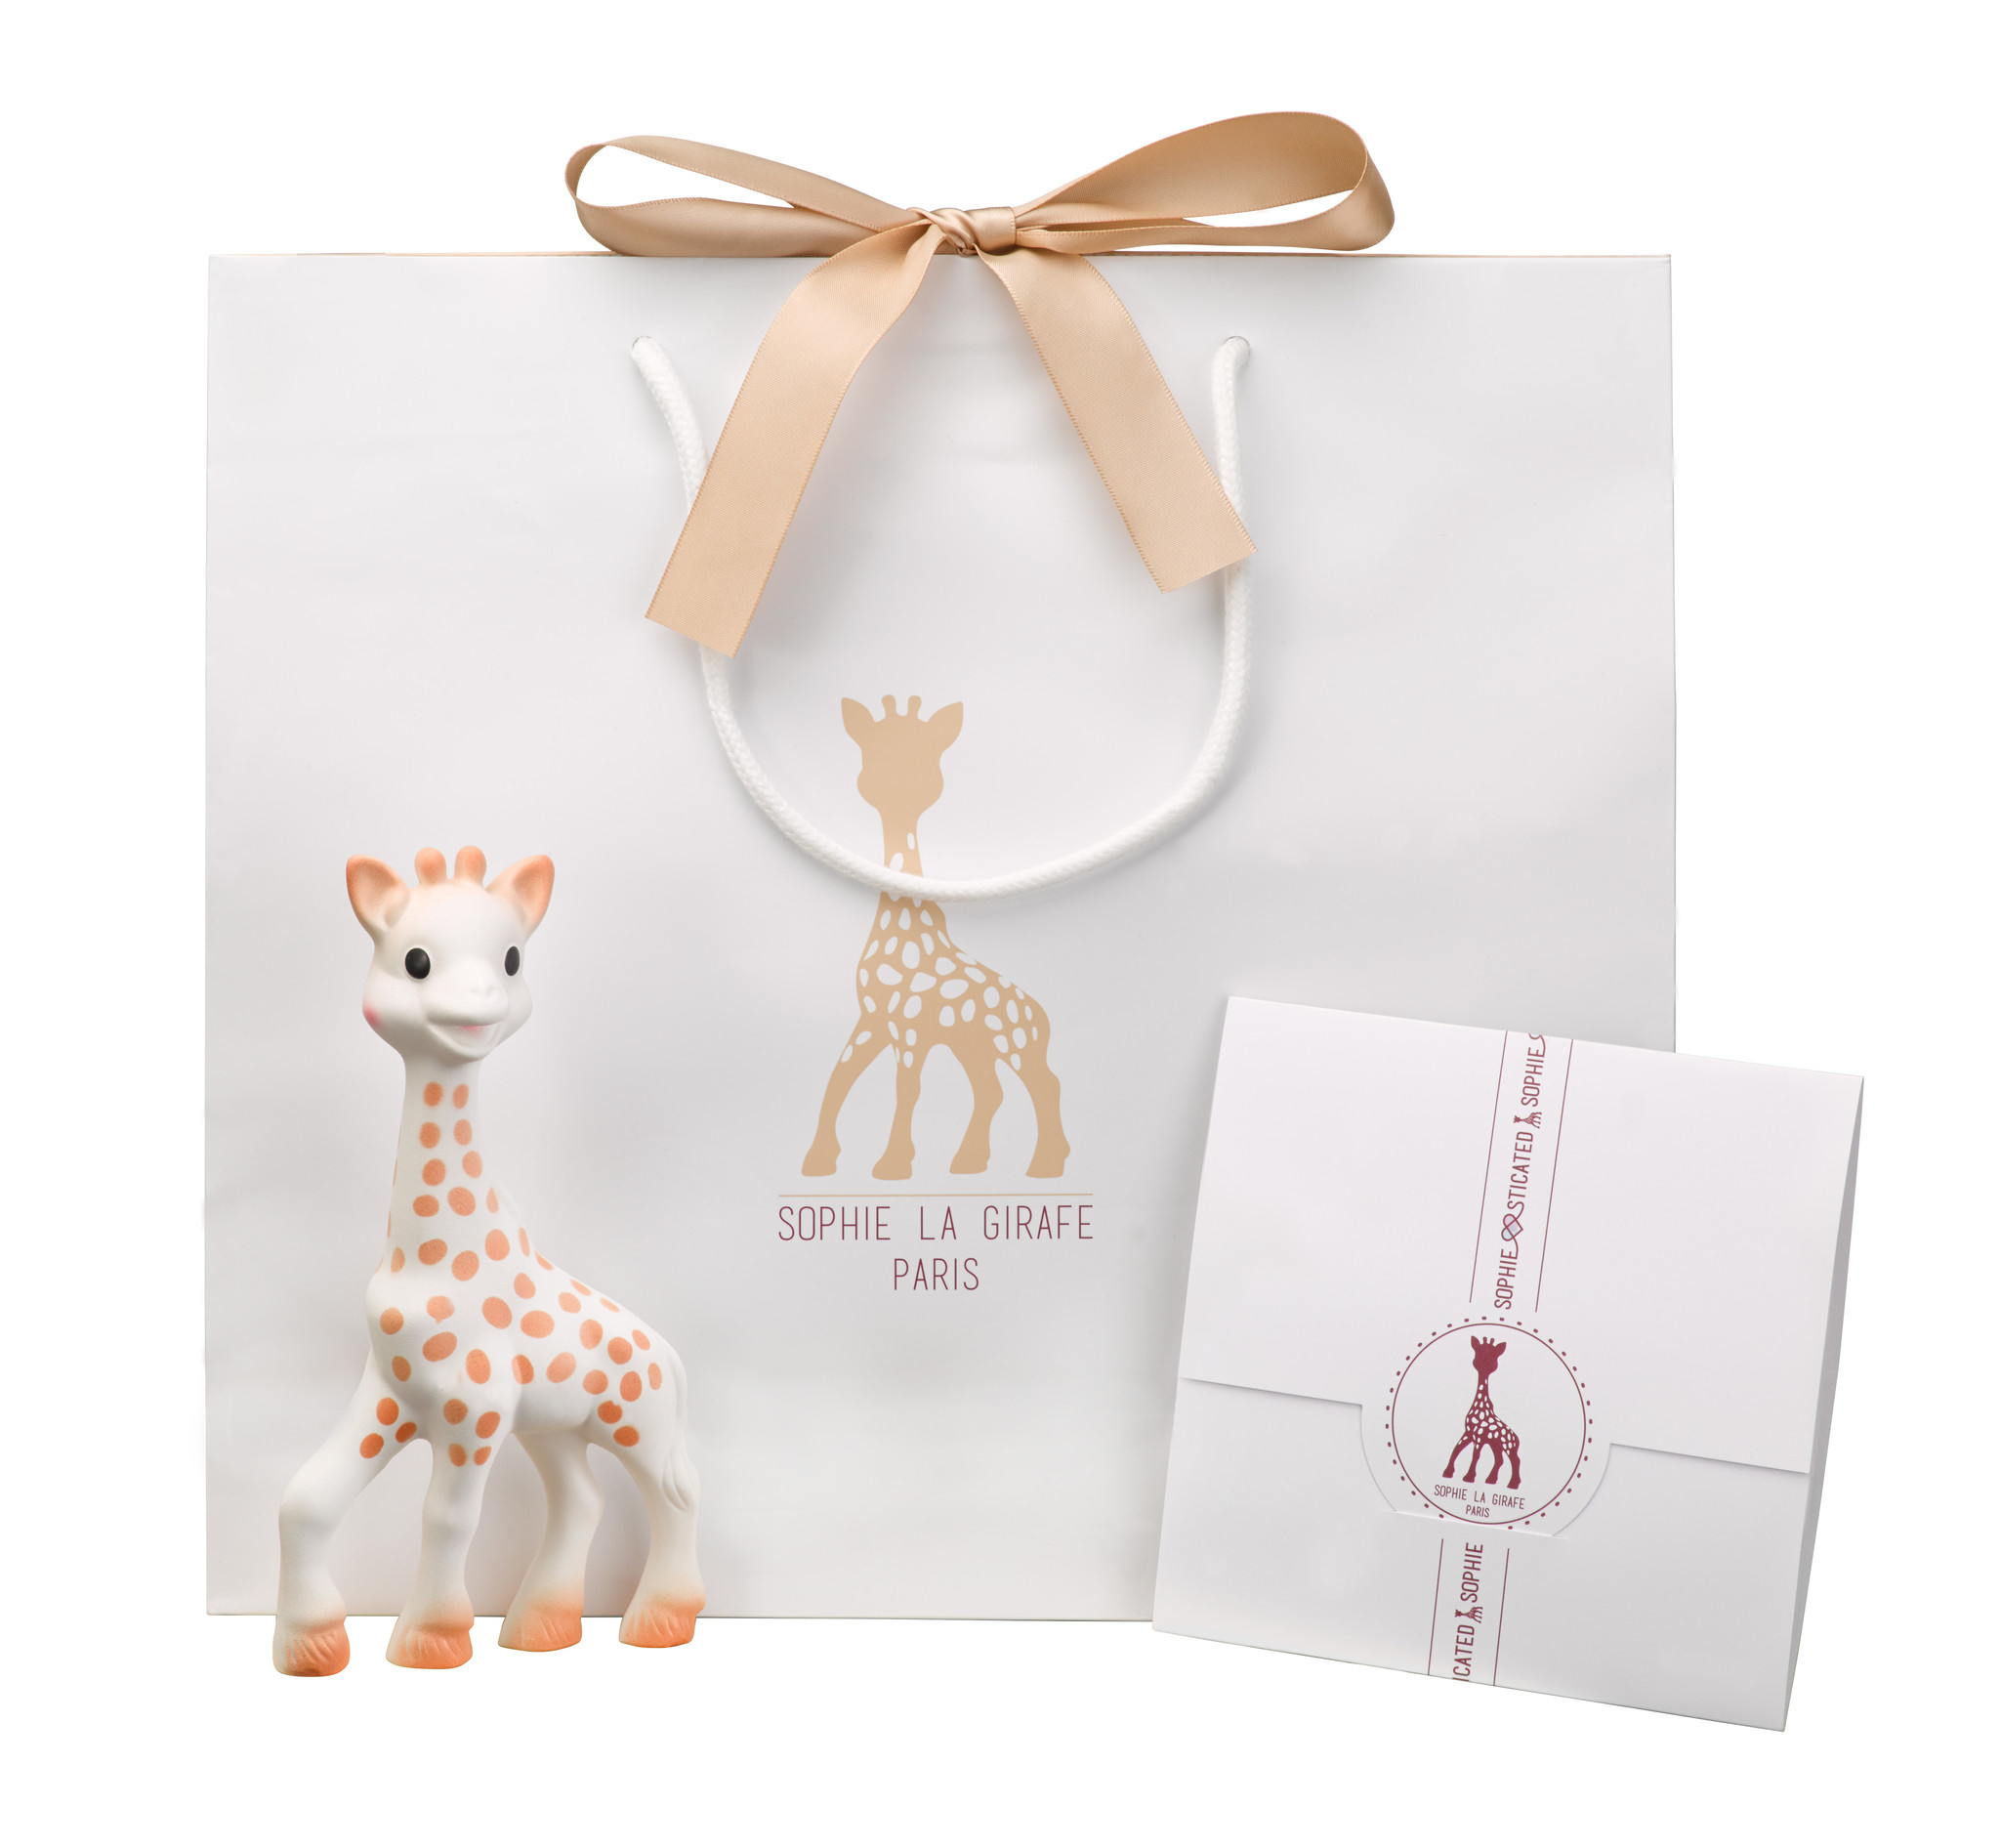 Sophie La Girafe cadeau naissance Sophiesticated 